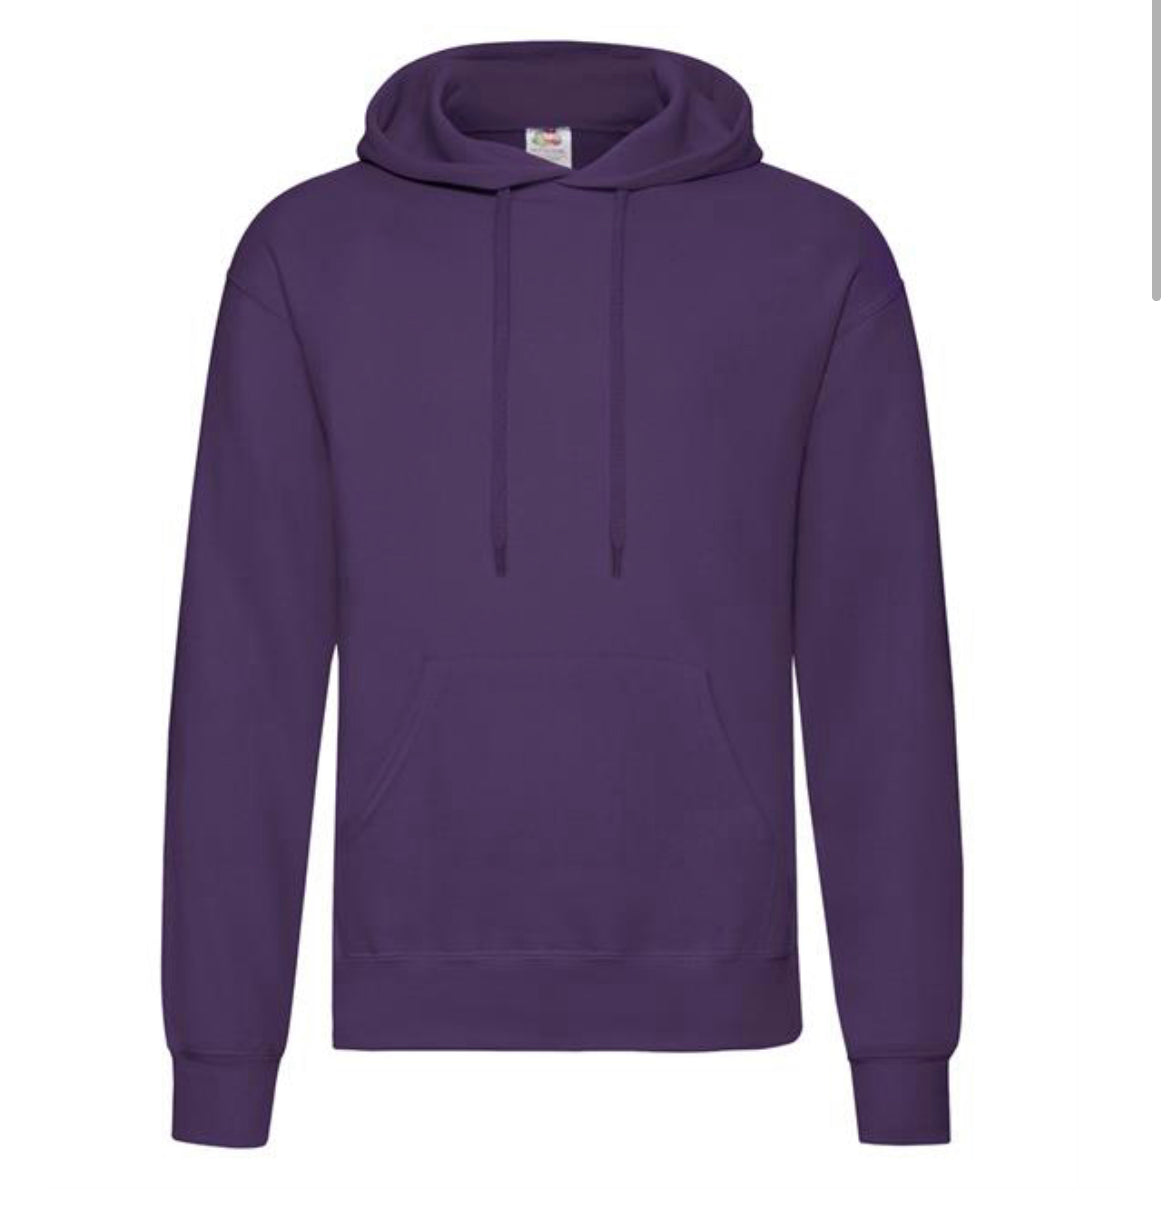 Customised printed pull over hoodie. Men’s